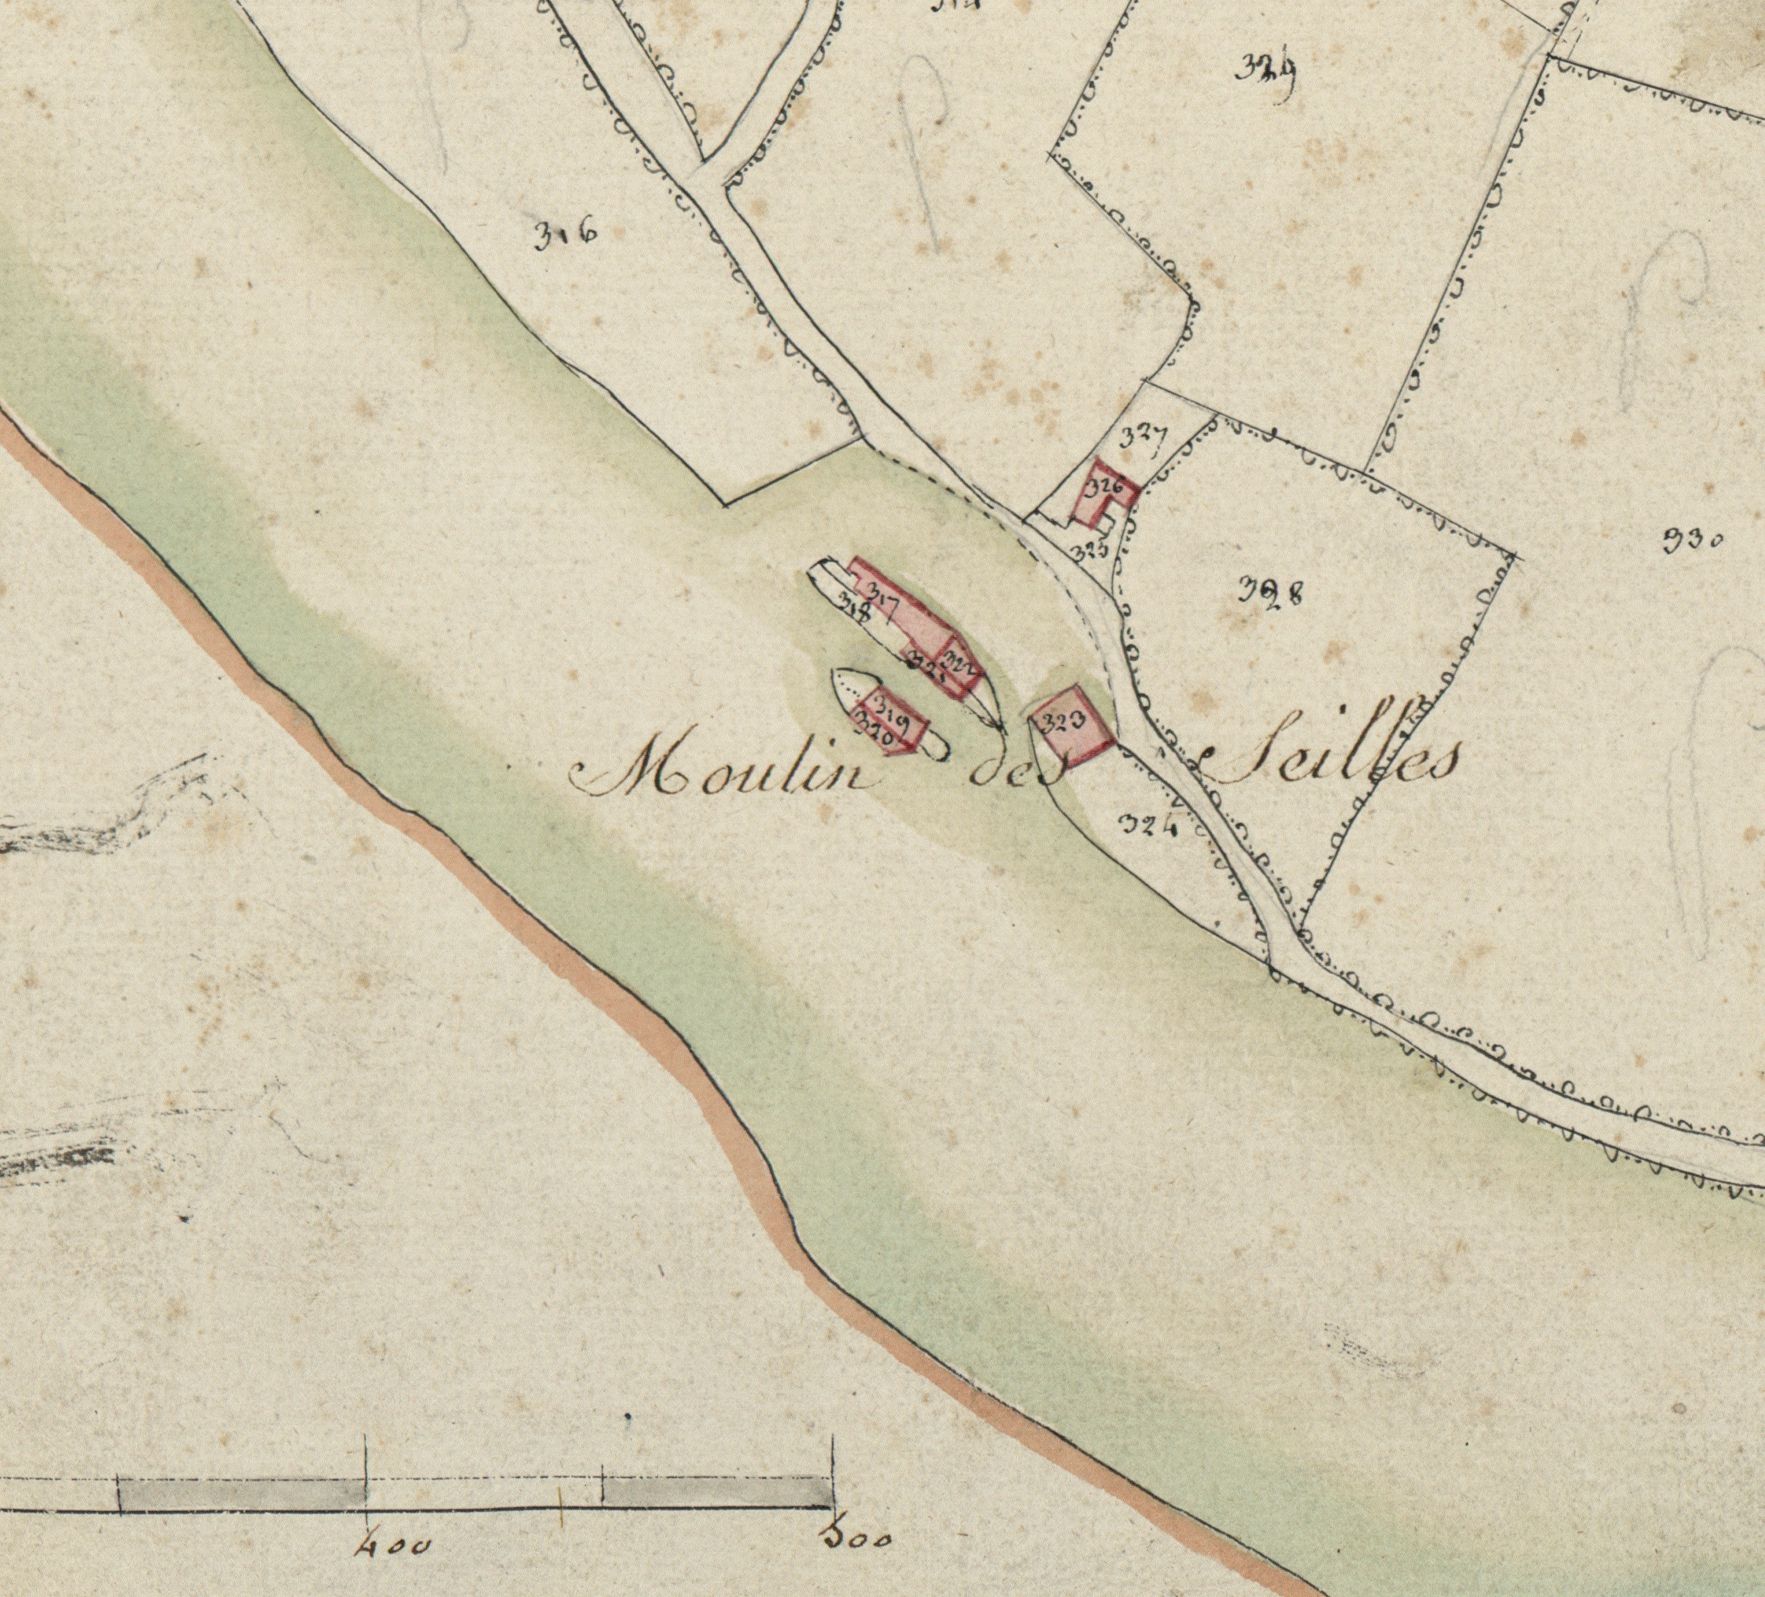 Le site des moulins des Seilles, extrait du cadastre de 1812.